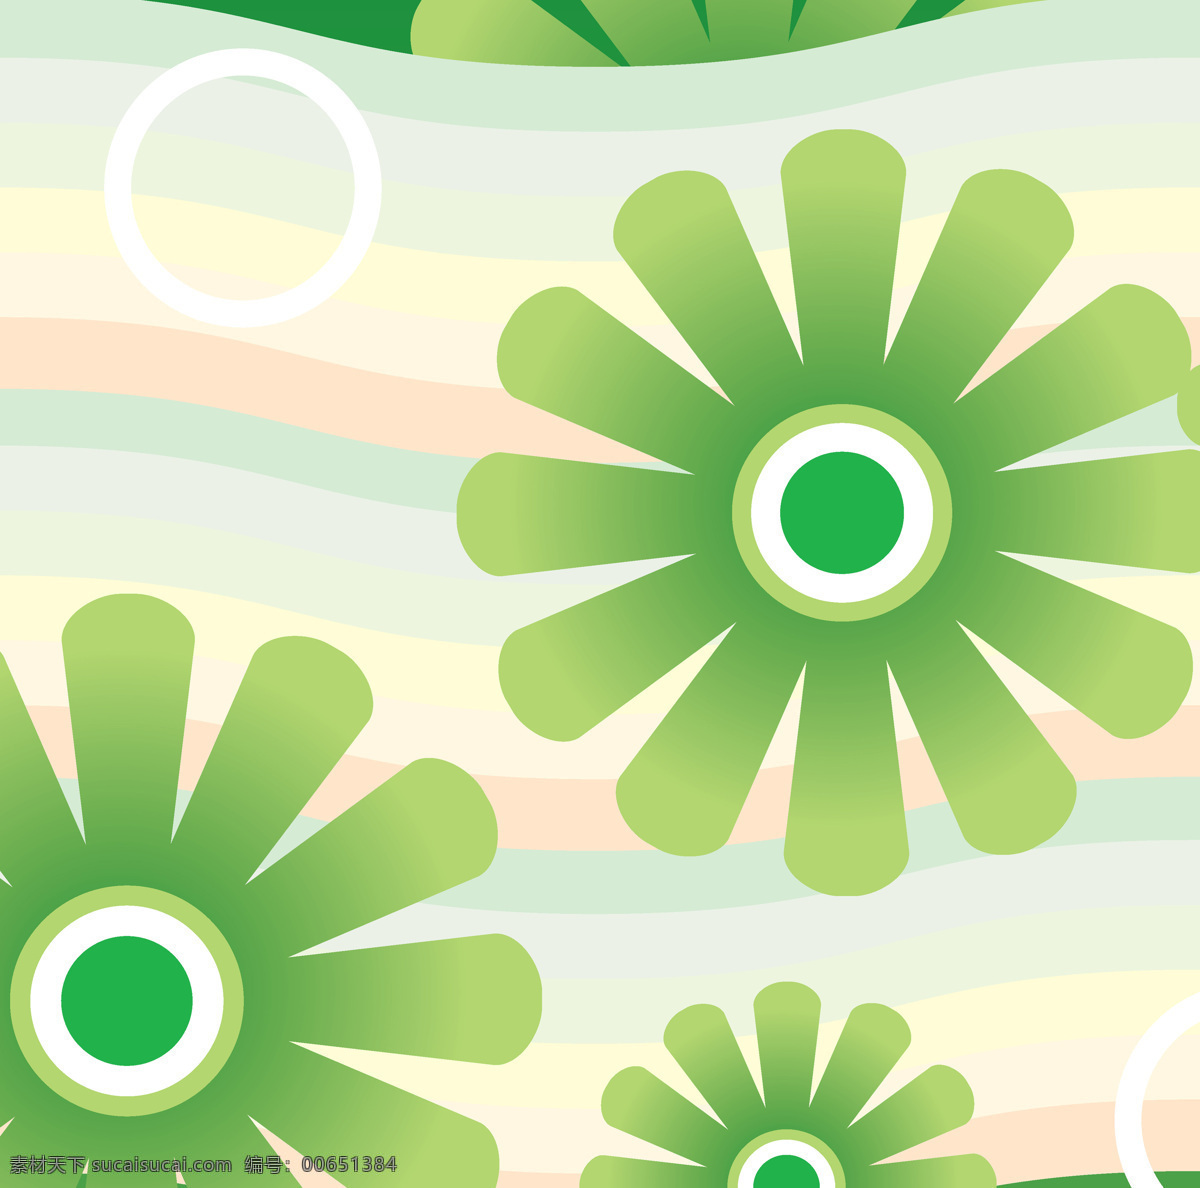 绿色 花朵 装饰画 背景素材 壁画 插画 抽象 抽象花 抽象画 无 框 画素 材 画 模板下载 无框画 绿色花朵 彩色 条纹 背景 图